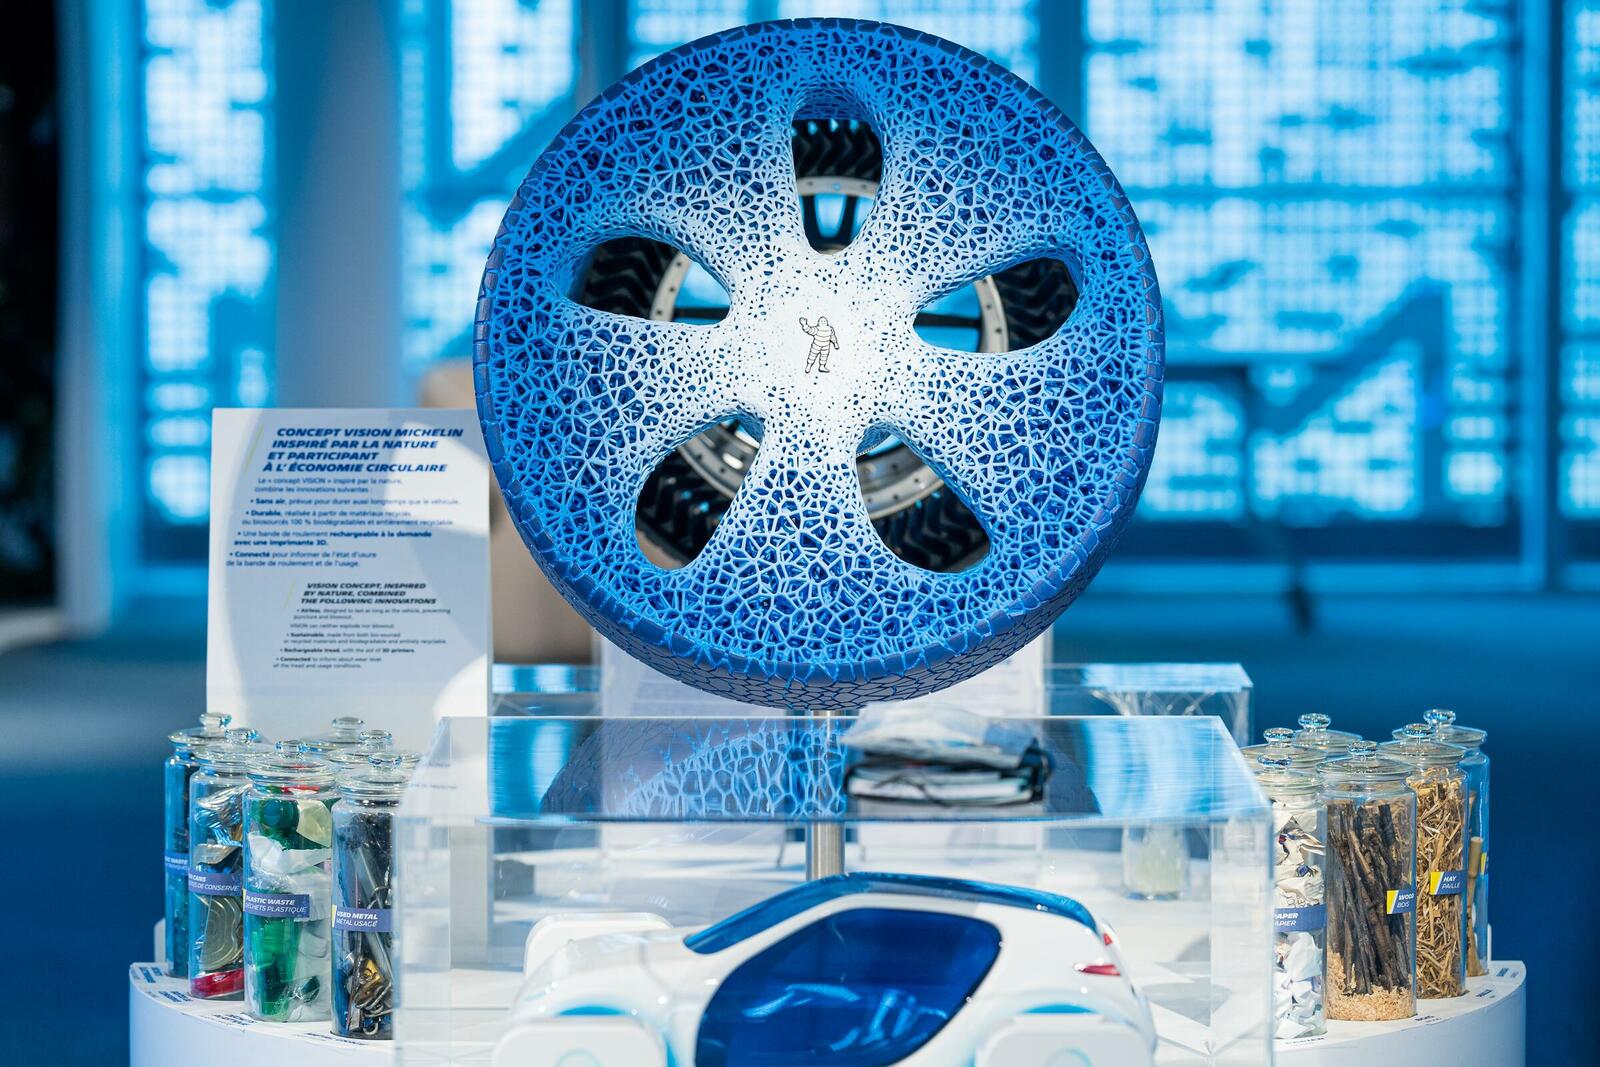 Prototyp für den Michelin-Reifen der Zukunft: Der luftlose und komplett aus nachhaltigen Materialien bestehende Vision Concept.